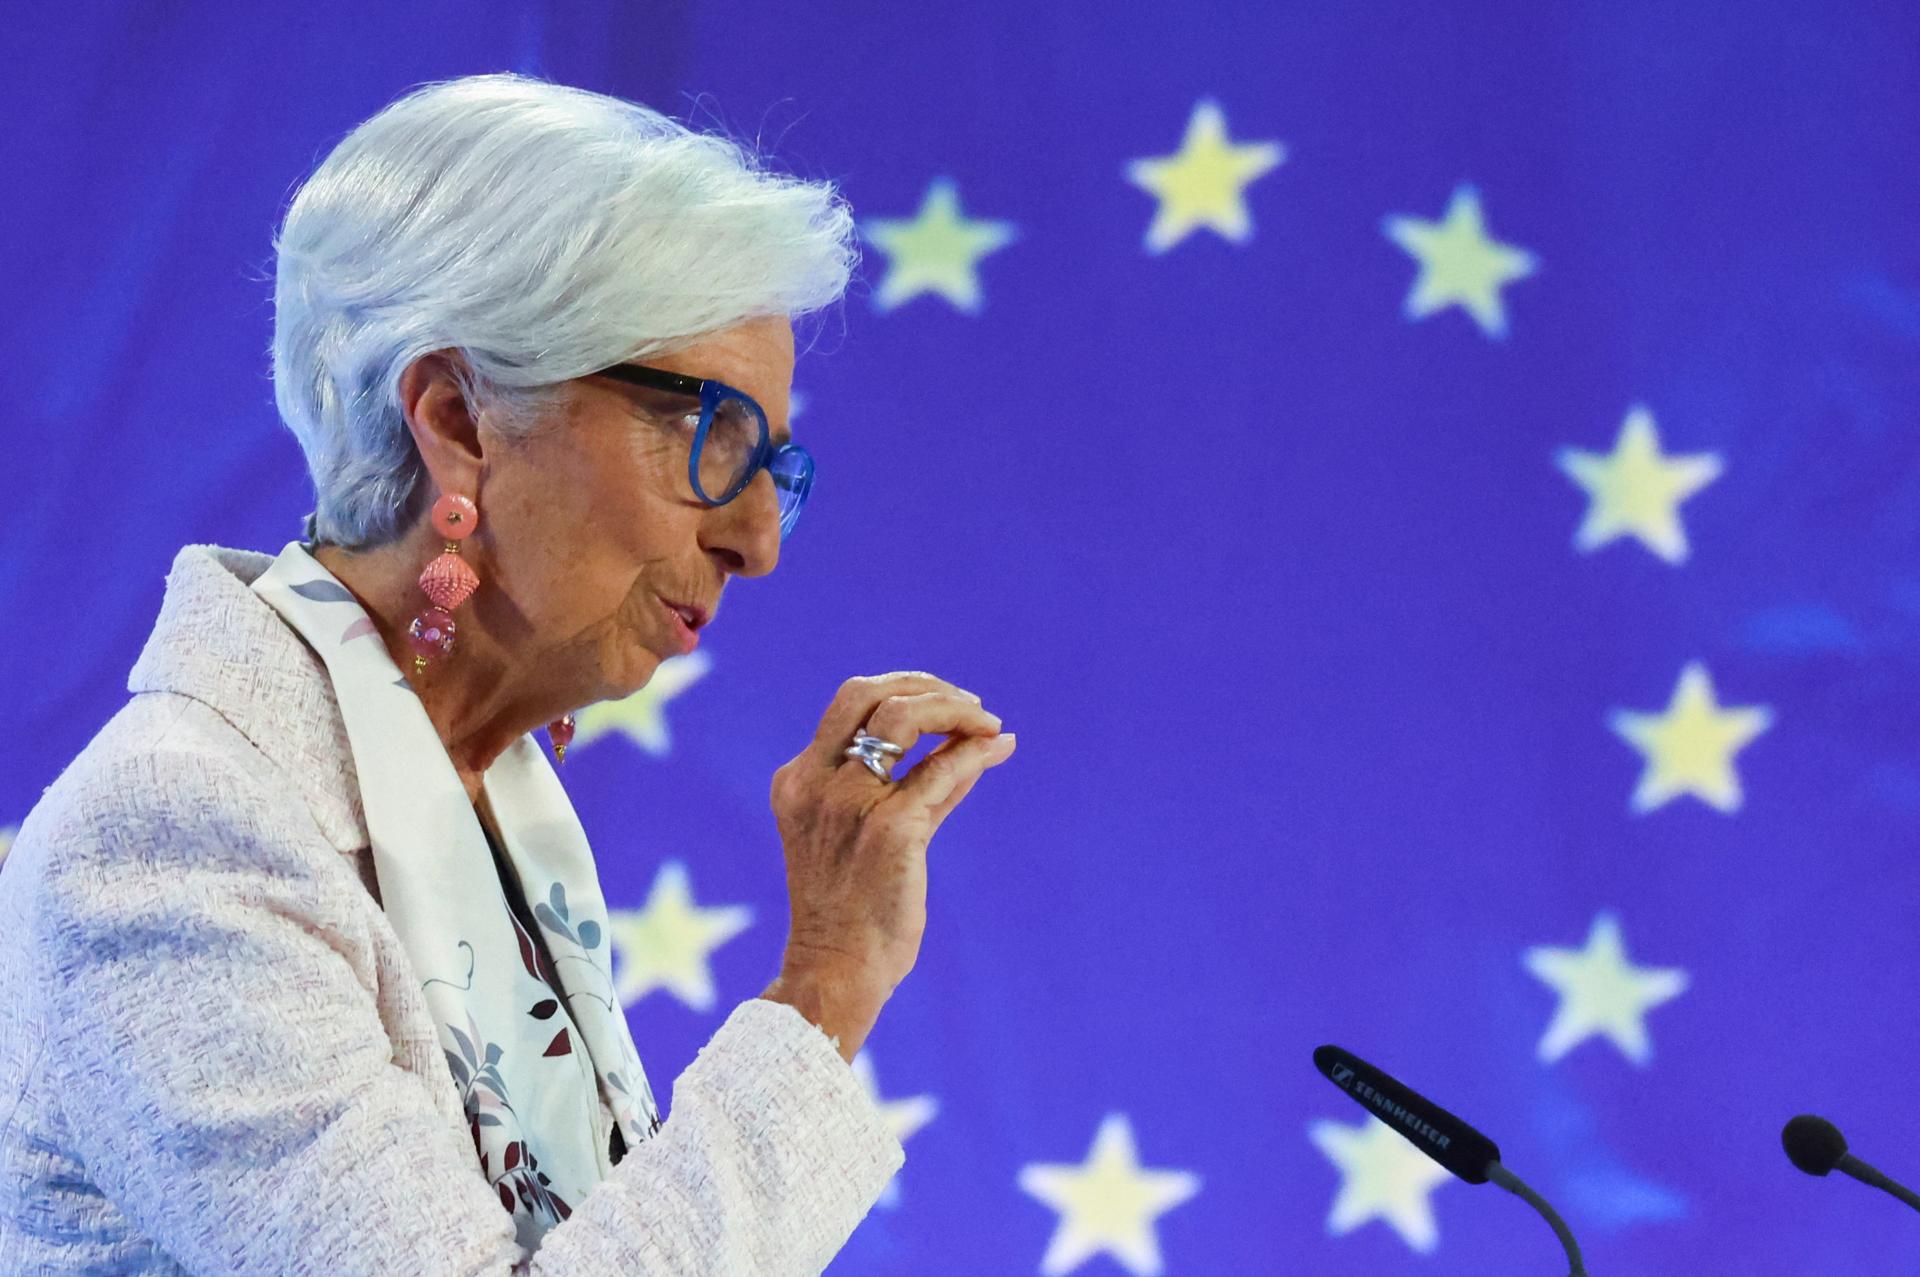 Predstavitelia ECB signalizovali, že sa blíži koniec rastu úrokov v eurozóne